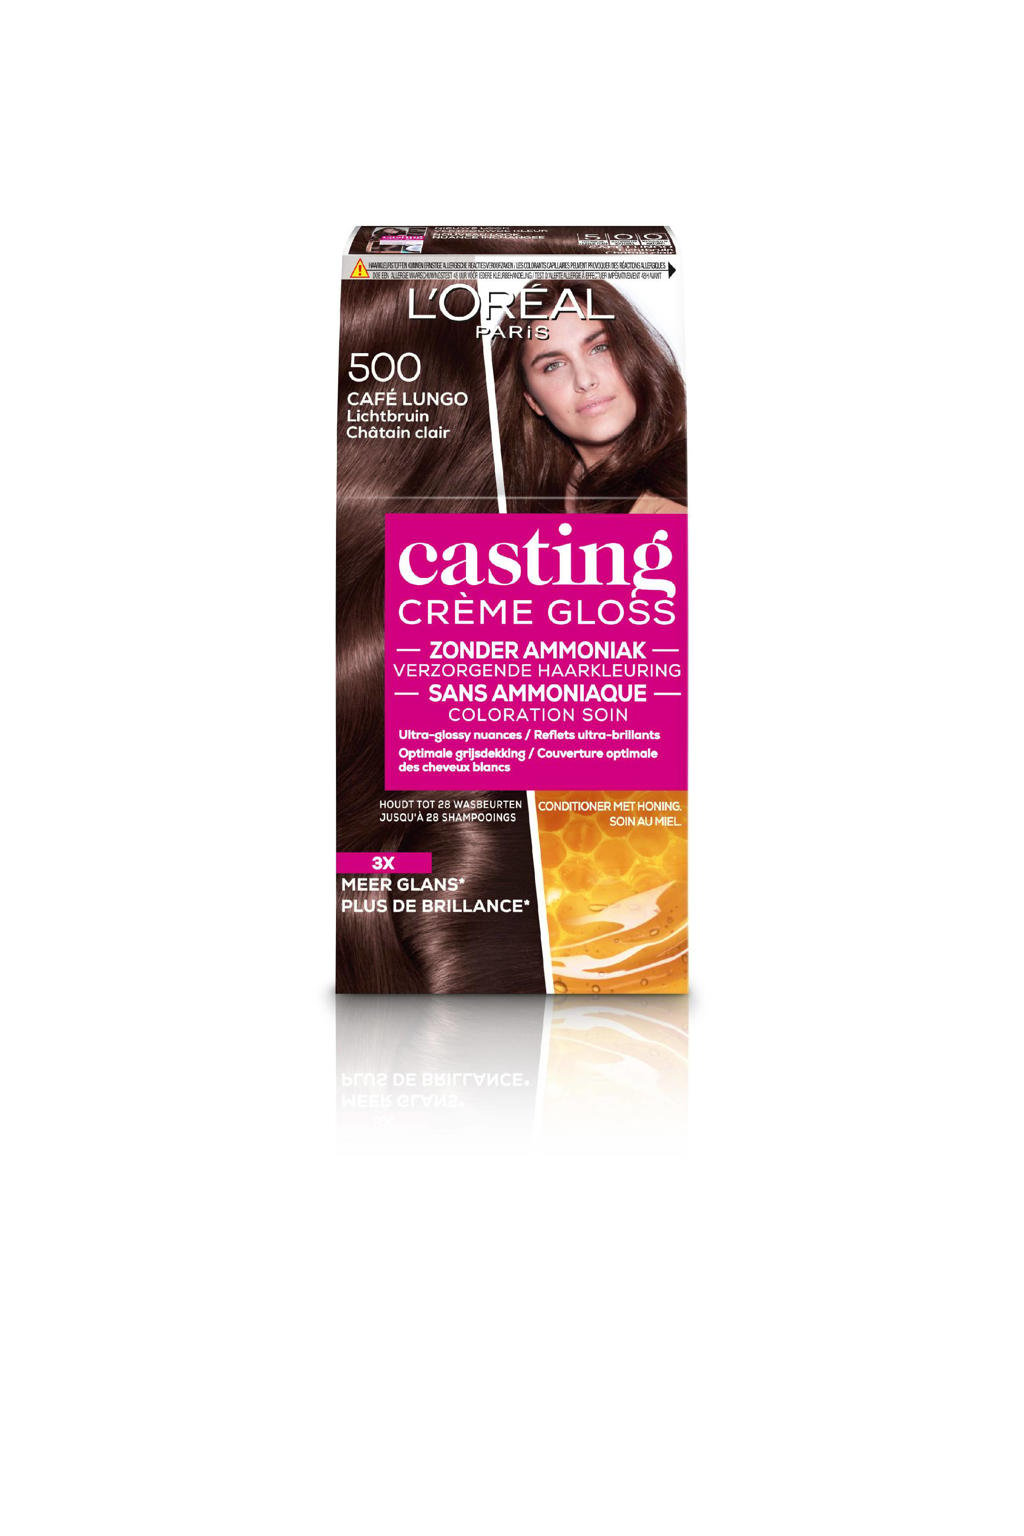 L’Oréal Paris Casting Crème Gloss haarkleuring - 500 Café Lungo